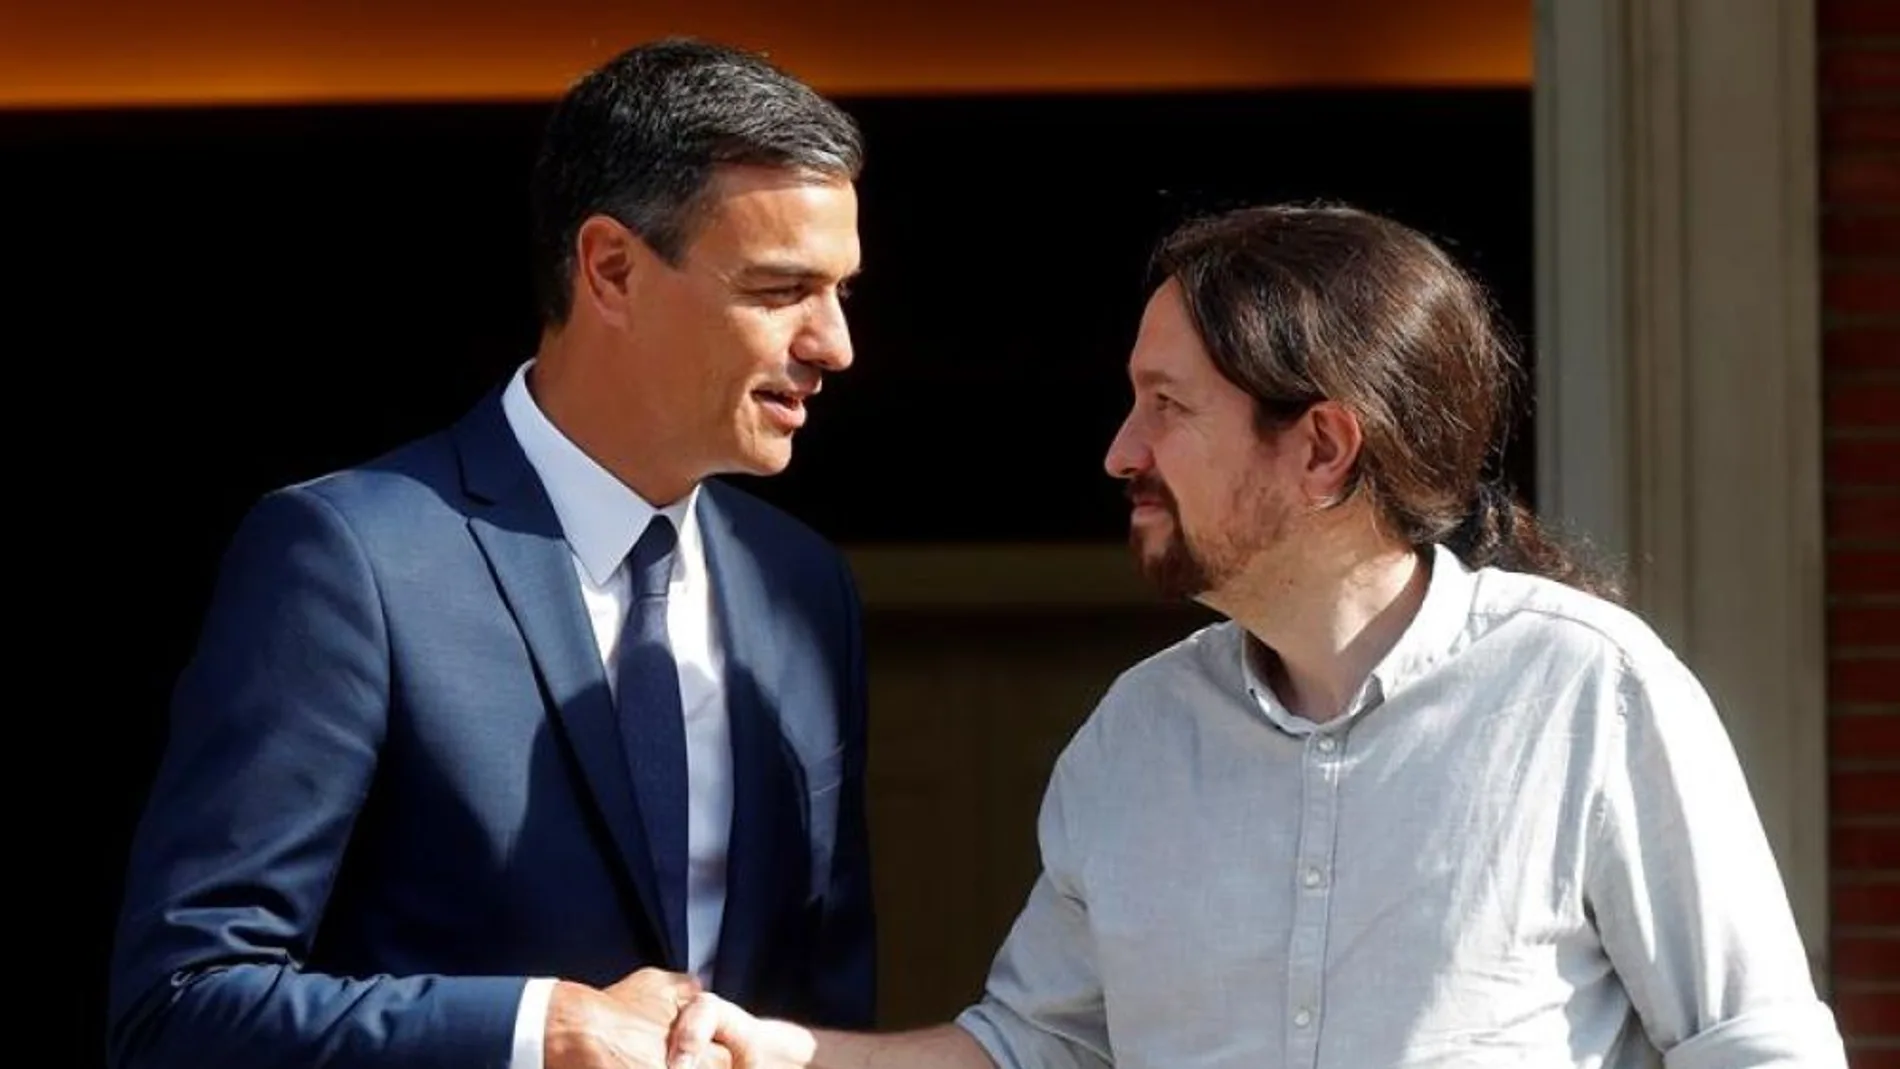 laSexta Noticias 20:00 (06-09-18) Pablo Iglesias califica de "buen comienzo" su reunión con Pedro Sánchez